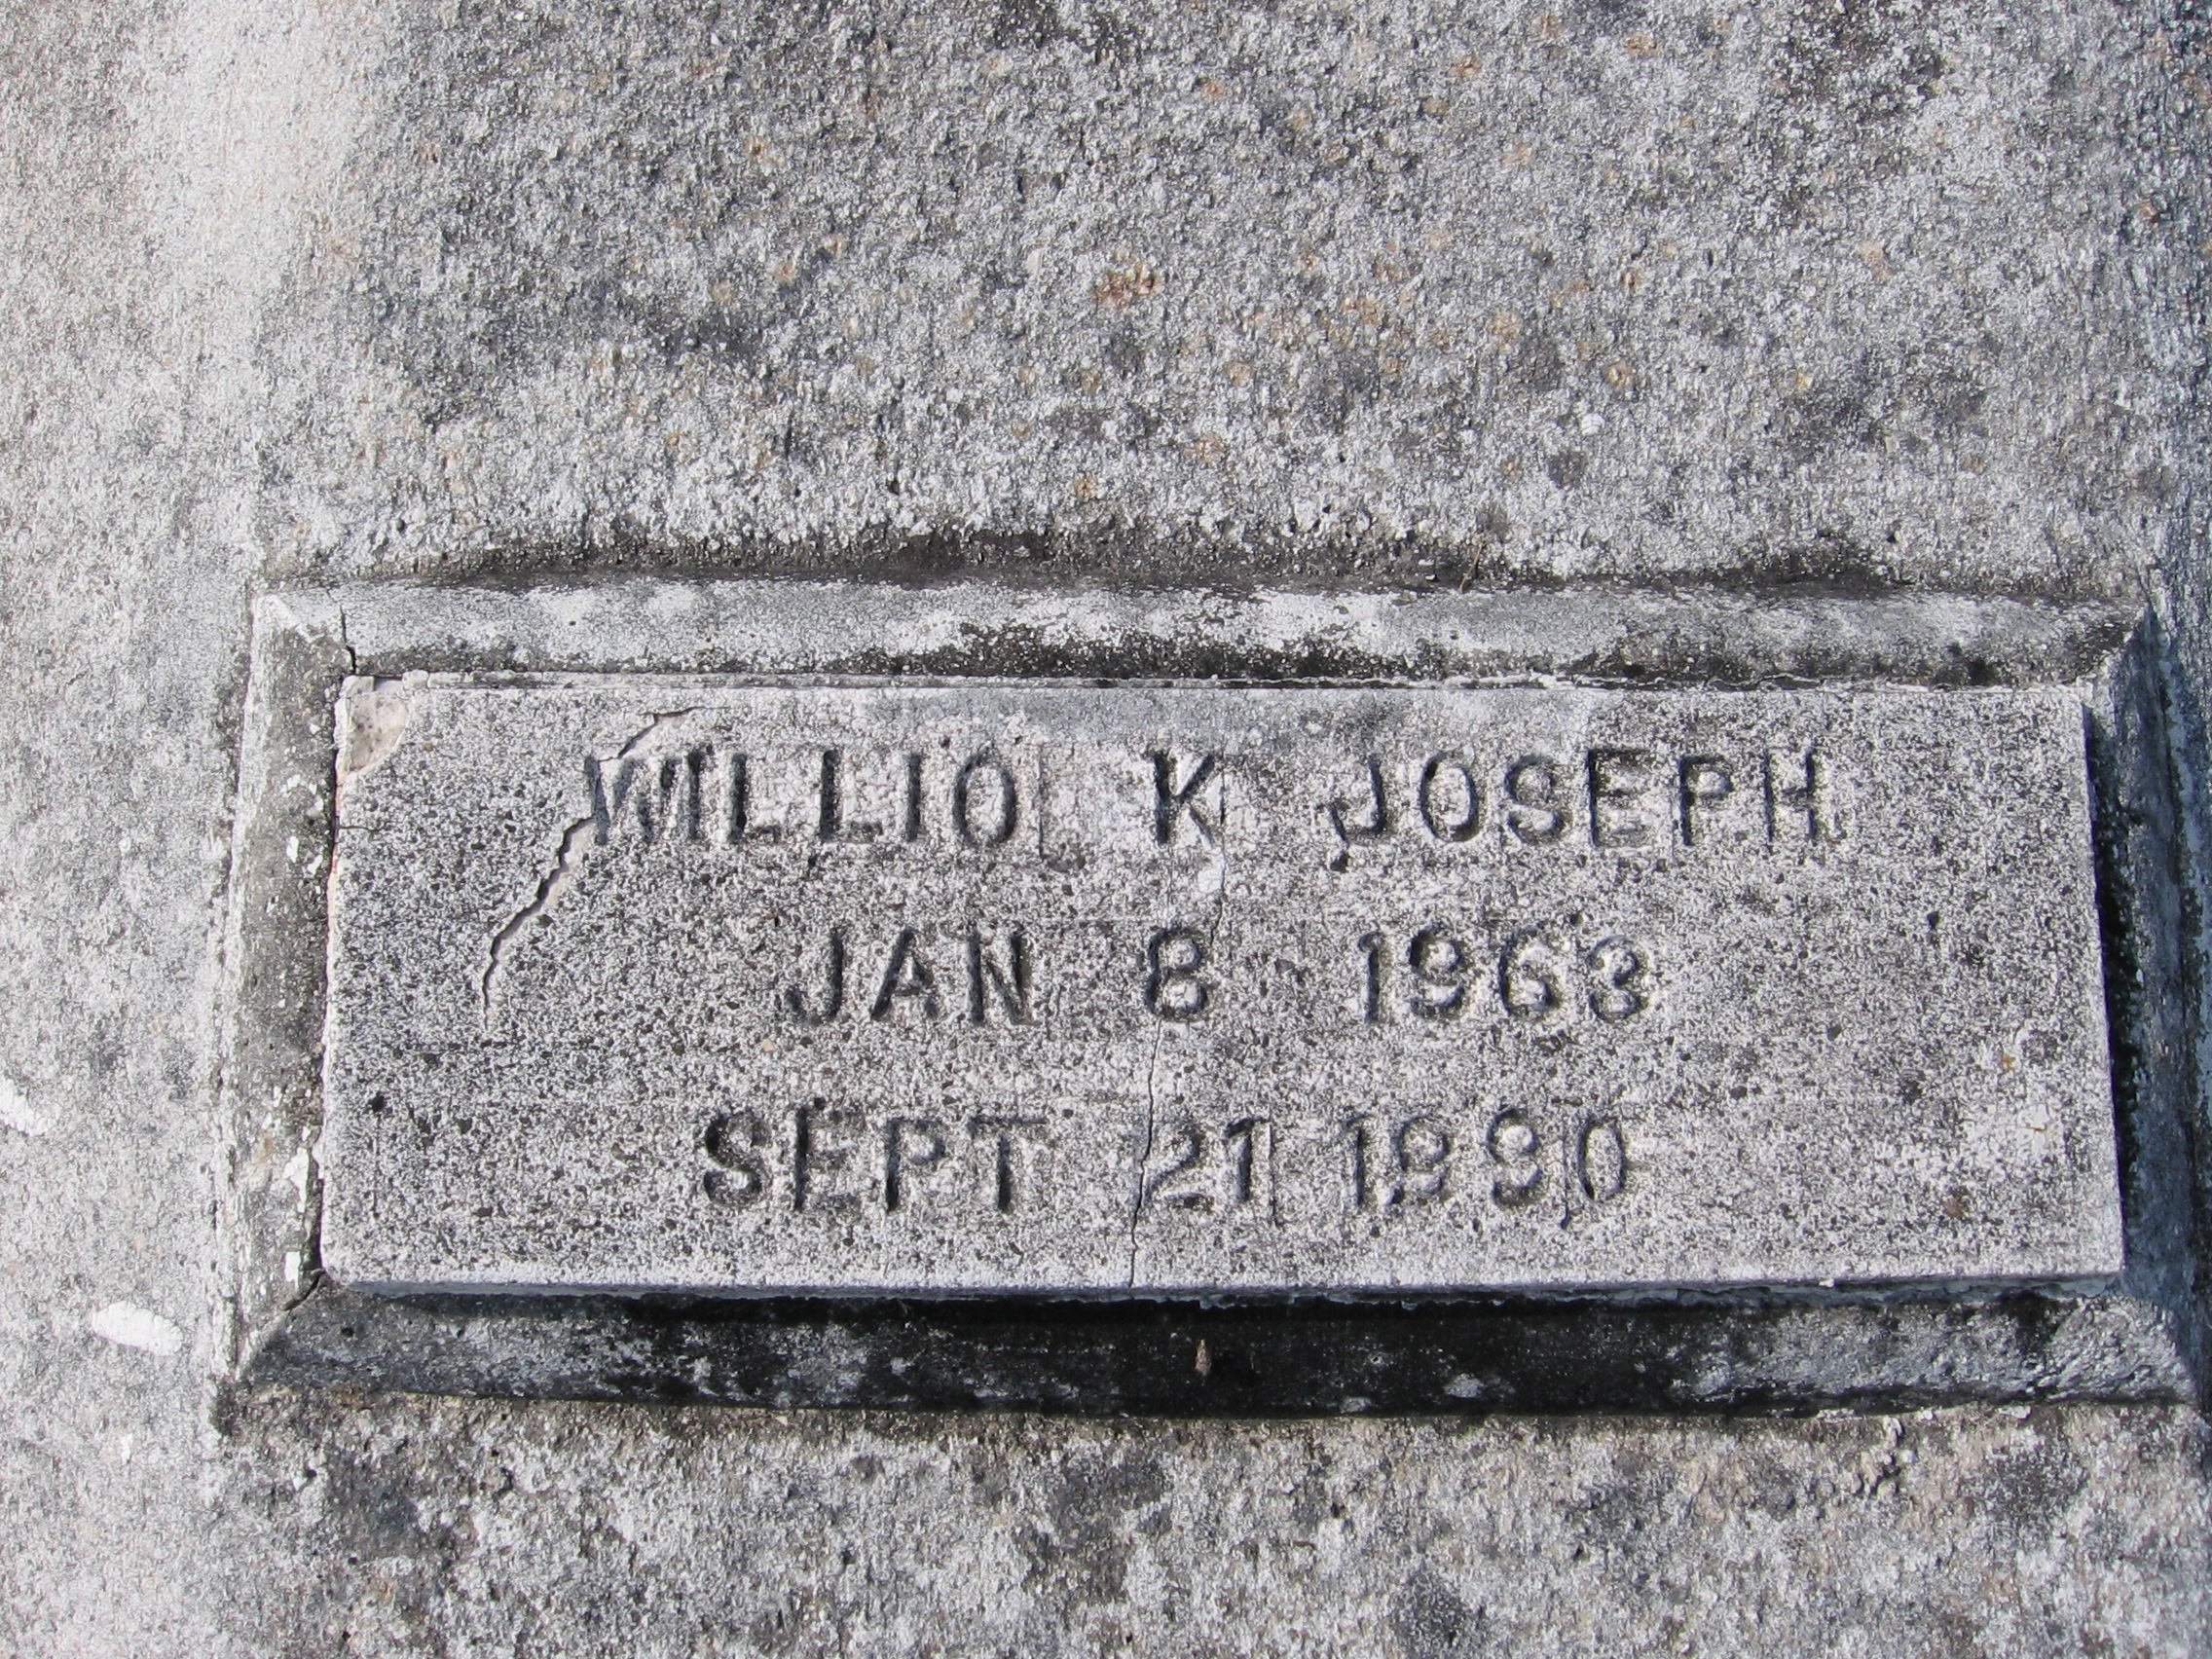 Willio K Joseph